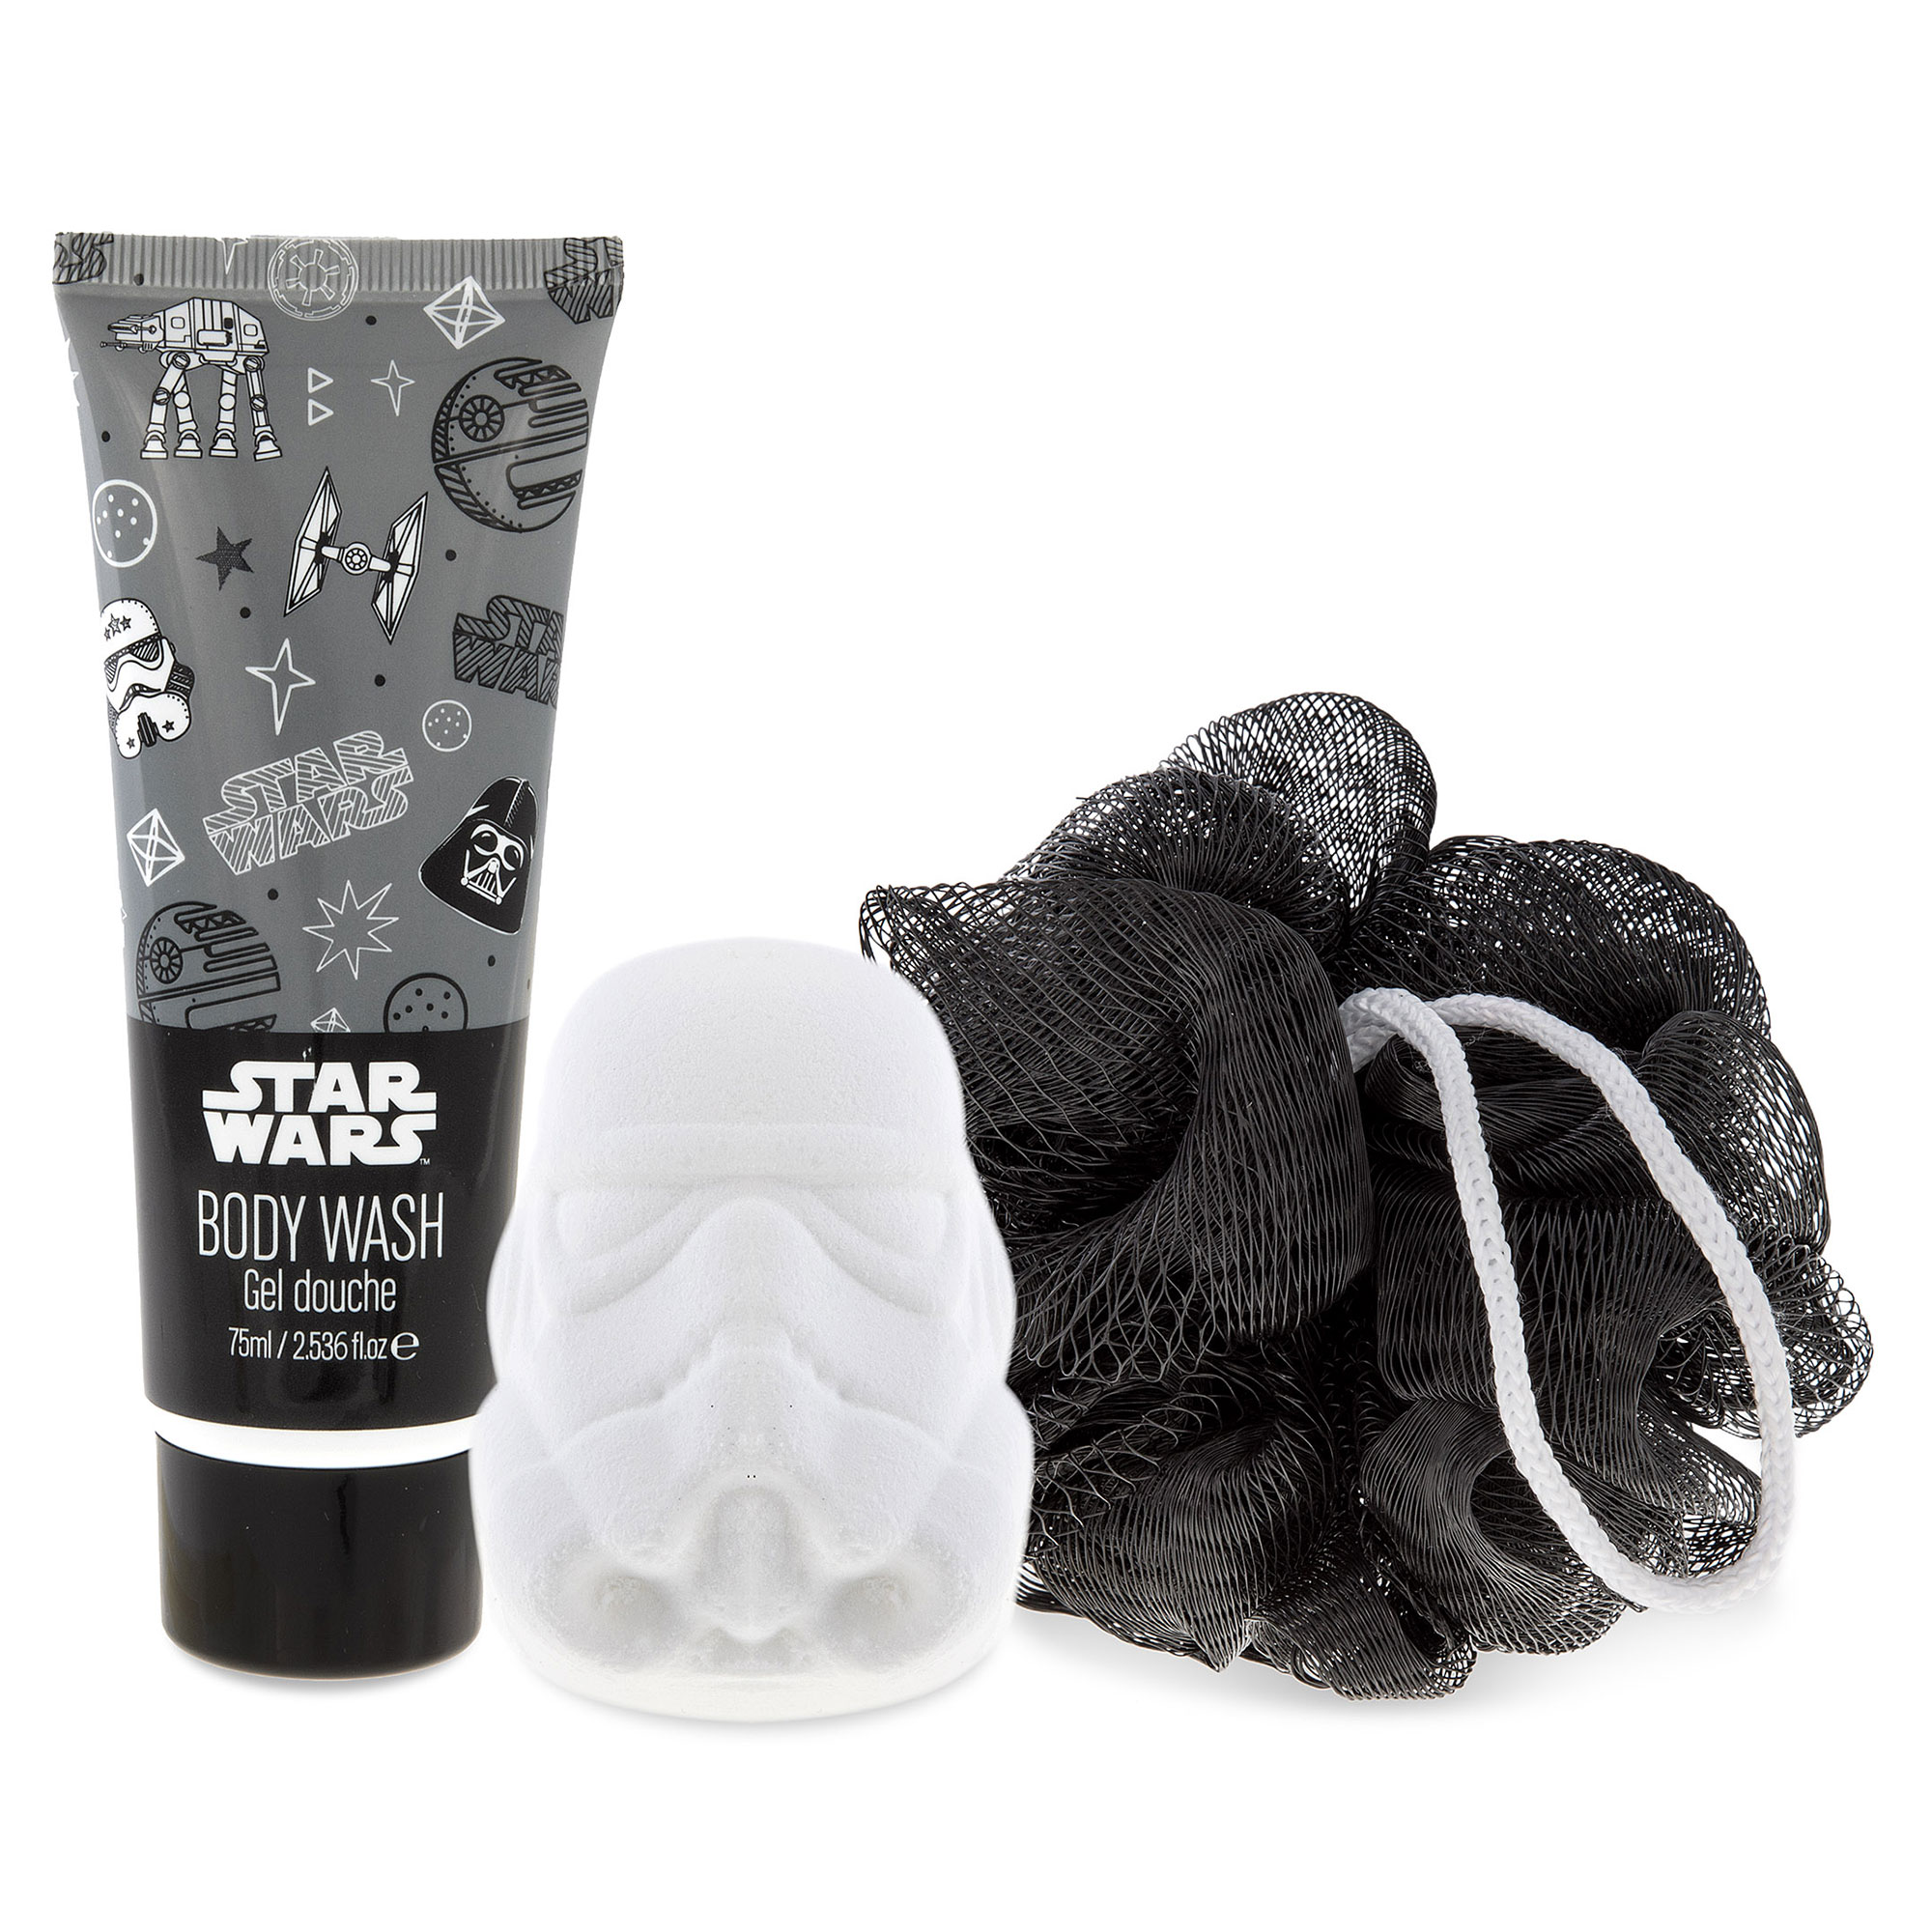 Star Wars Stormtrooper Wash Bag Set